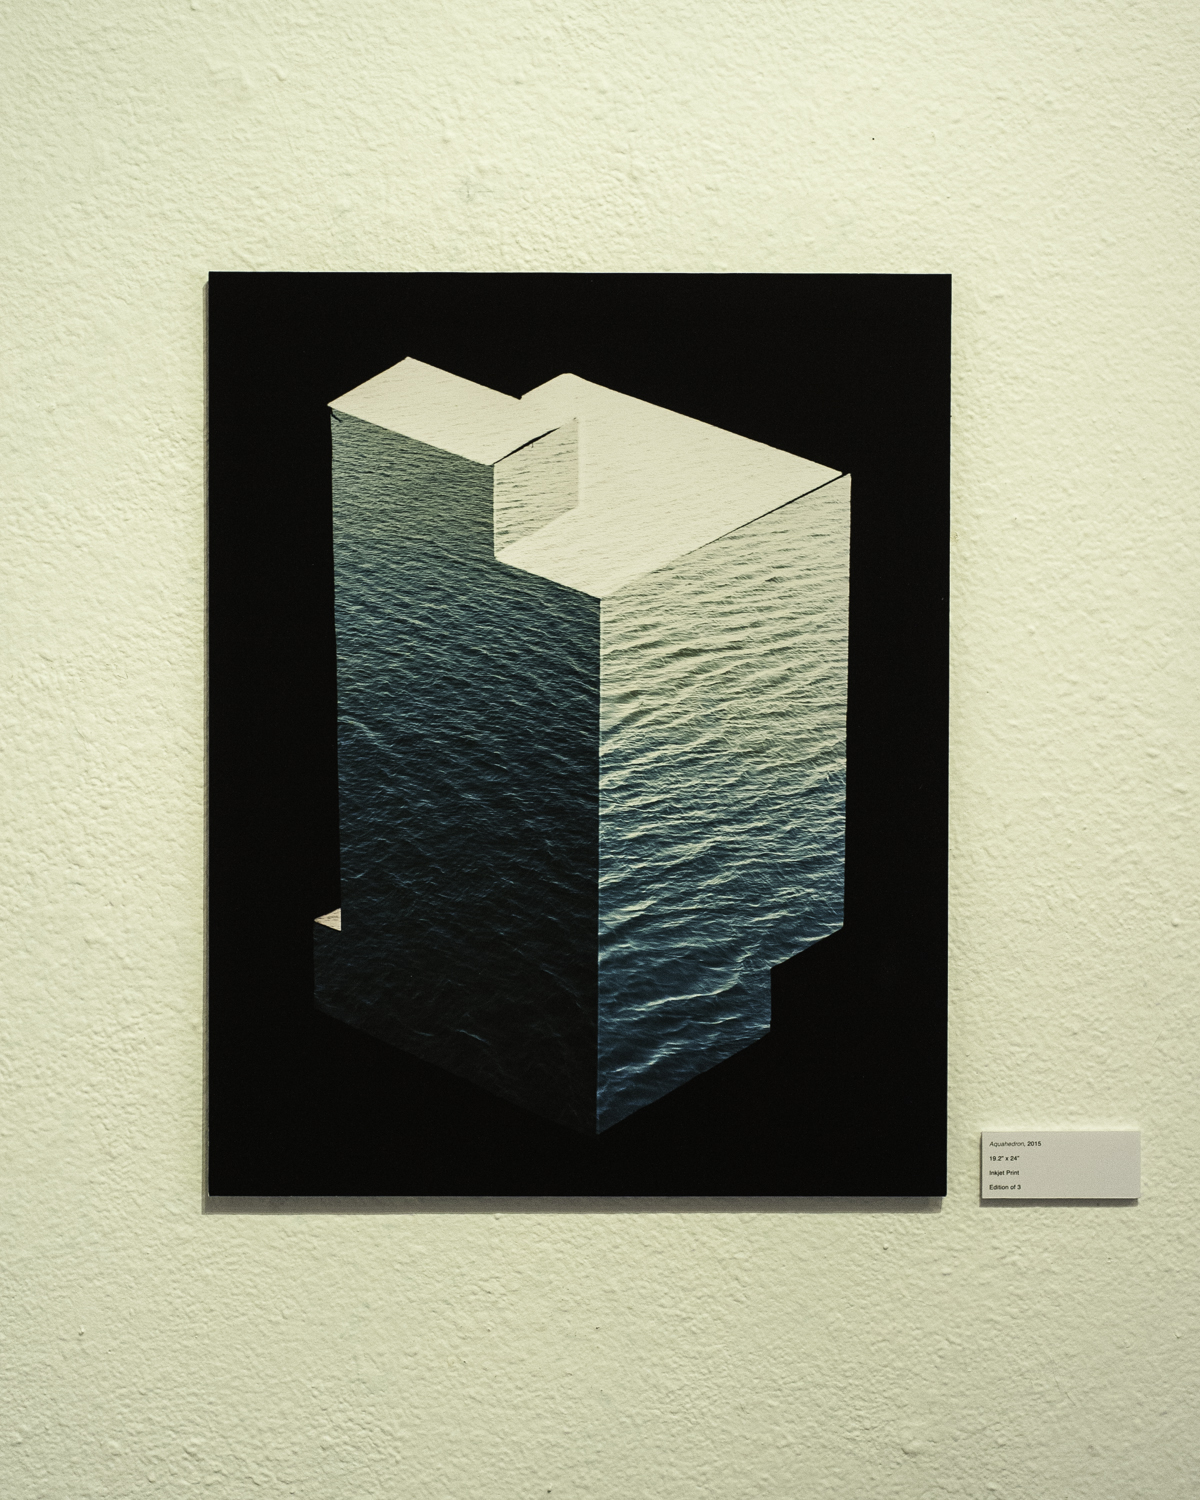   Aquahedron , 2015  Digital Inkjet Print  19.2”x24” 